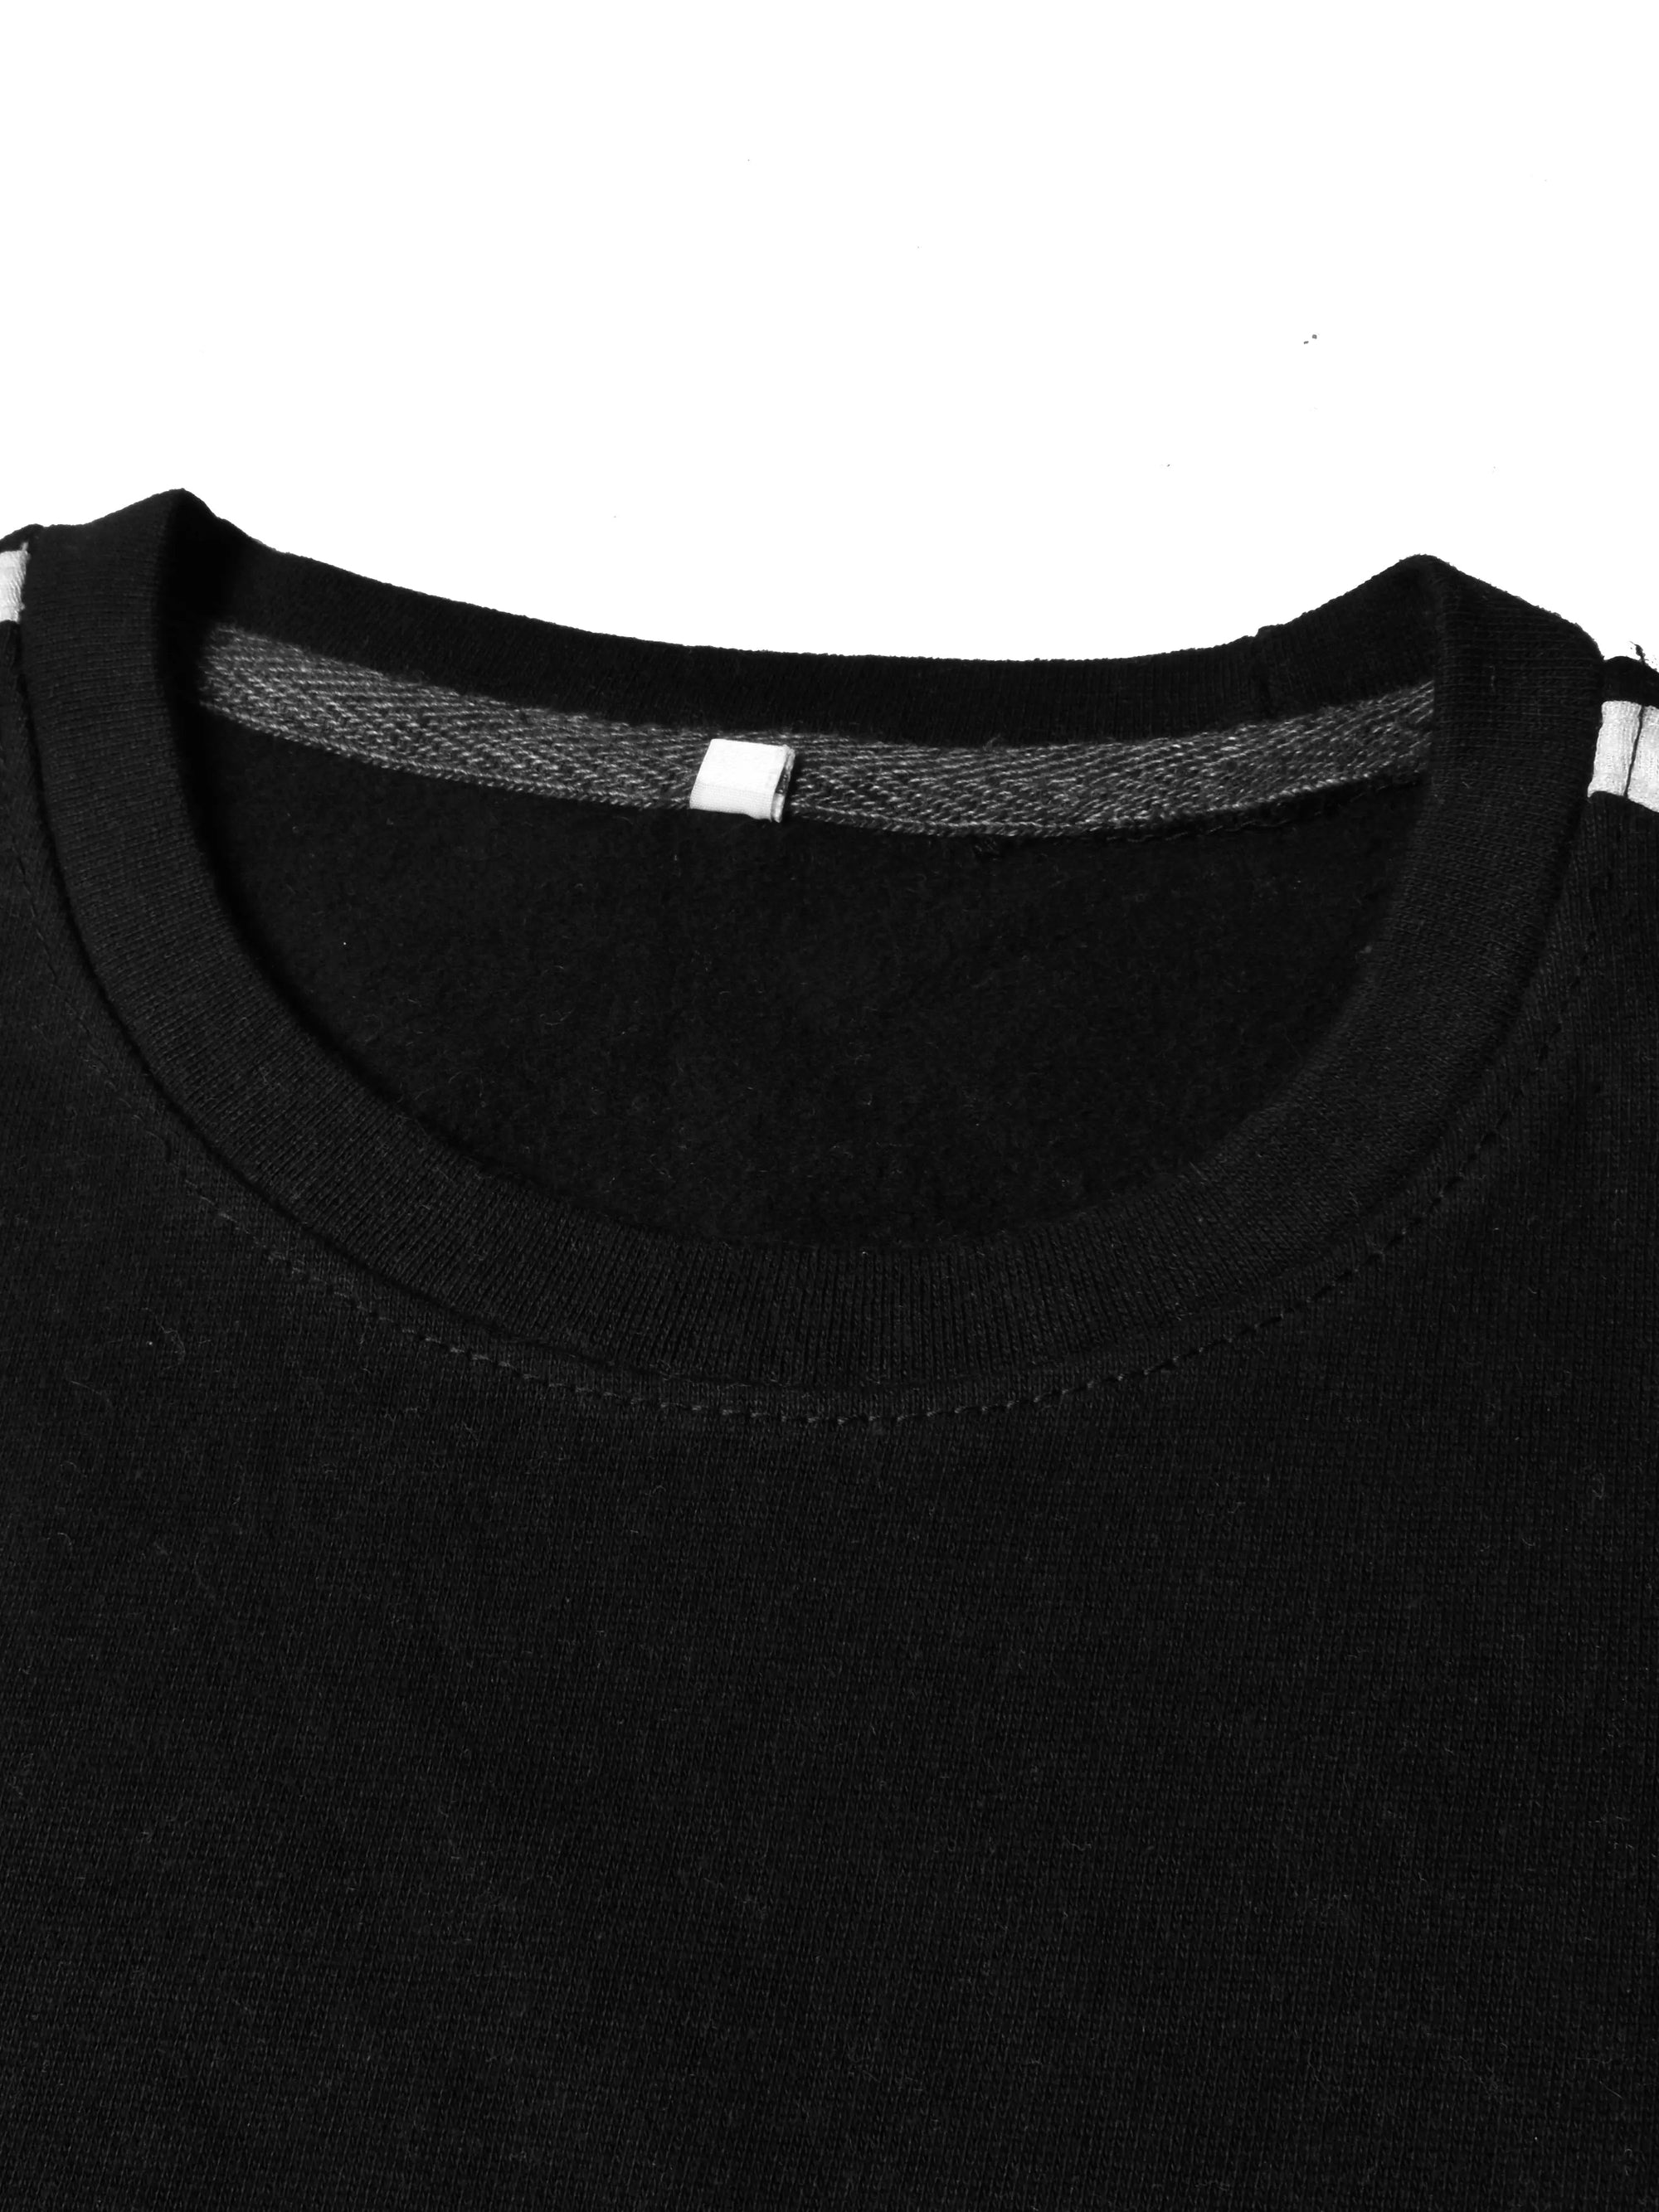 Next Fleece Crew Neck Sweatshirt For Men Black With Panels-SP73